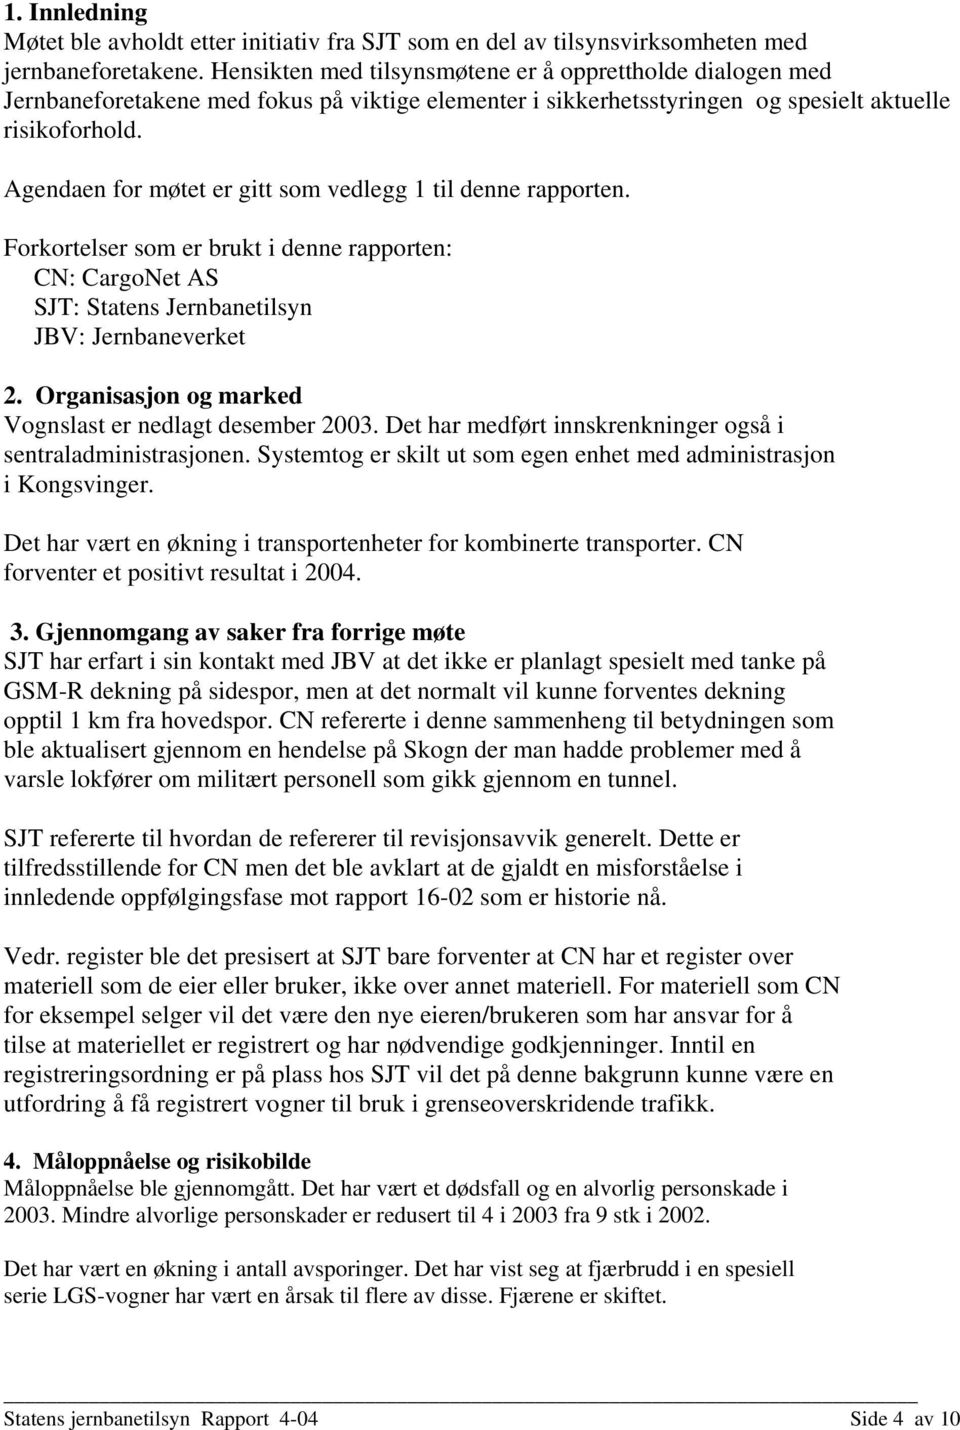 Agendaen for møtet er gitt som vedlegg 1 til denne rapporten. Forkortelser som er brukt i denne rapporten: CN: CargoNet AS SJT: Statens Jernbanetilsyn JBV: Jernbaneverket 2.